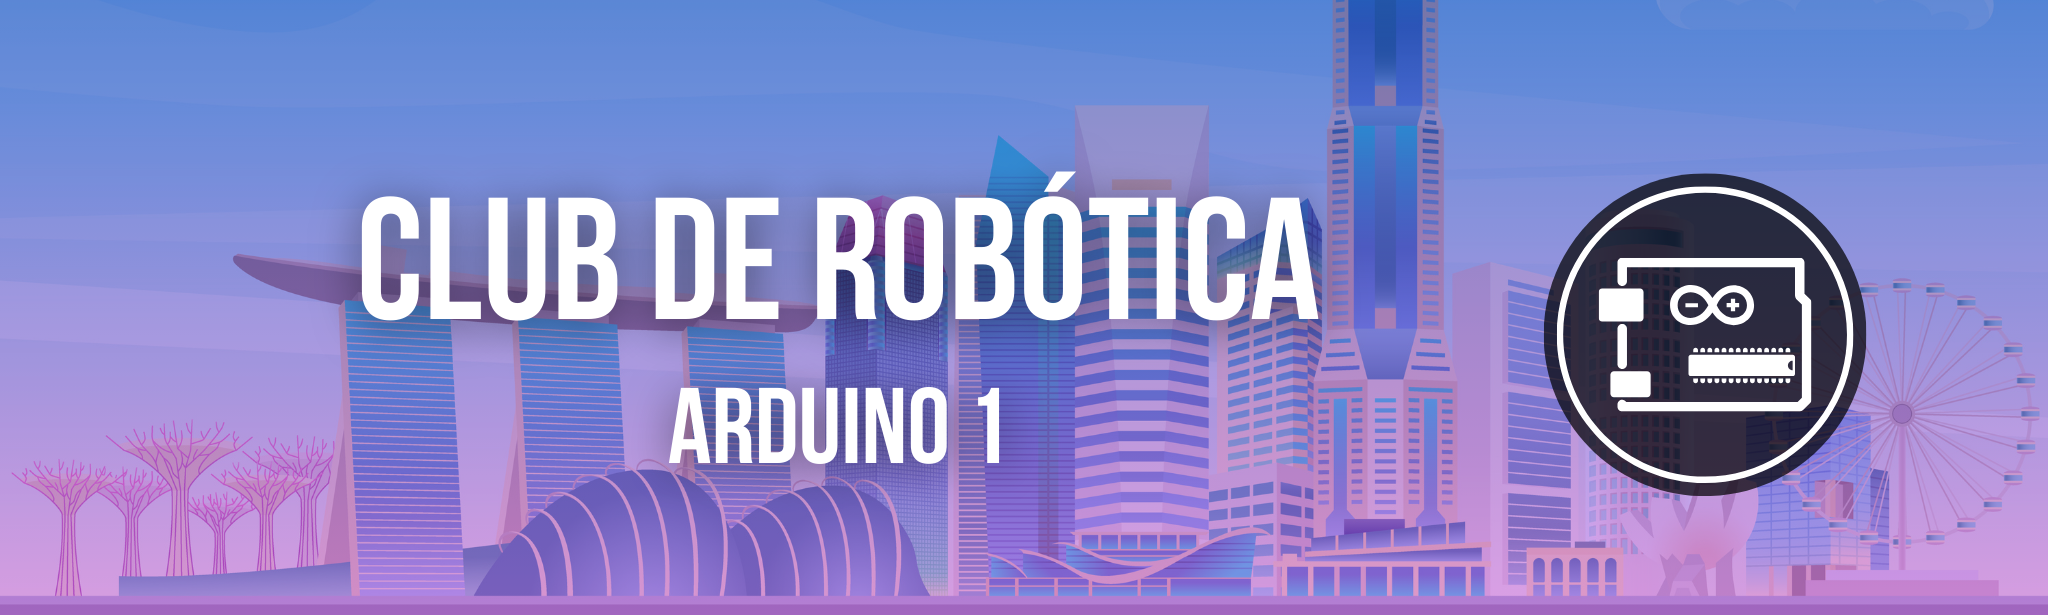 Club de Robótica para chicas - Arduino (16)